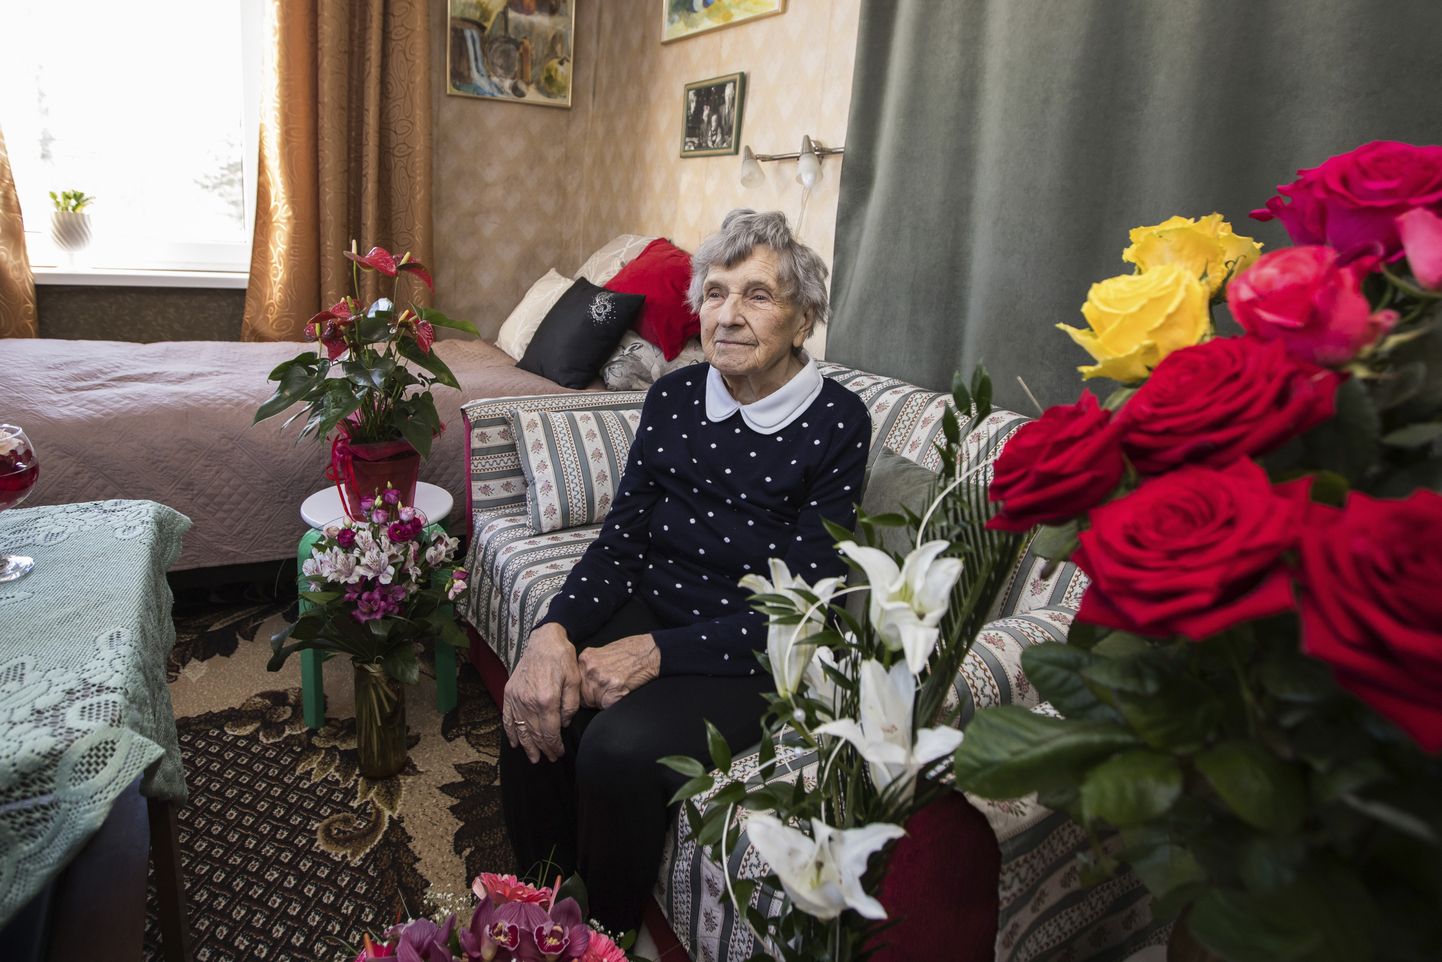 Lillemeri meenutab eelmise päeva pidu, millega Aliide Pukk tähistas 100. sünnipäeva.